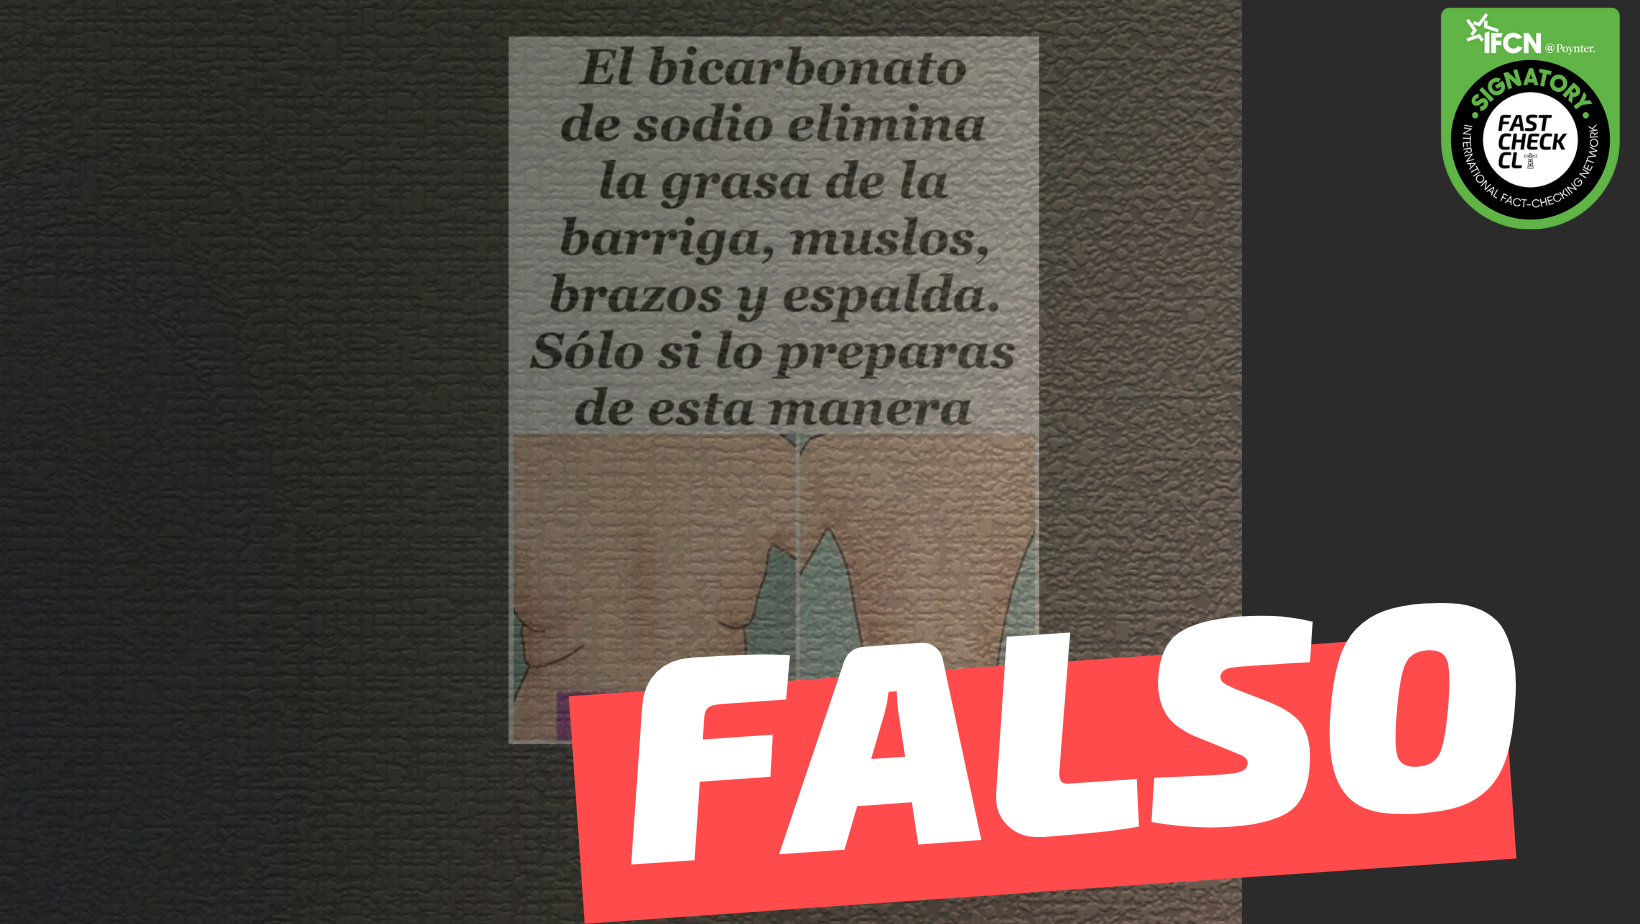 You are currently viewing “El bicarbonato de sodio elimina la grasa de la barriga, muslos, brazos y espalda”: #Falso